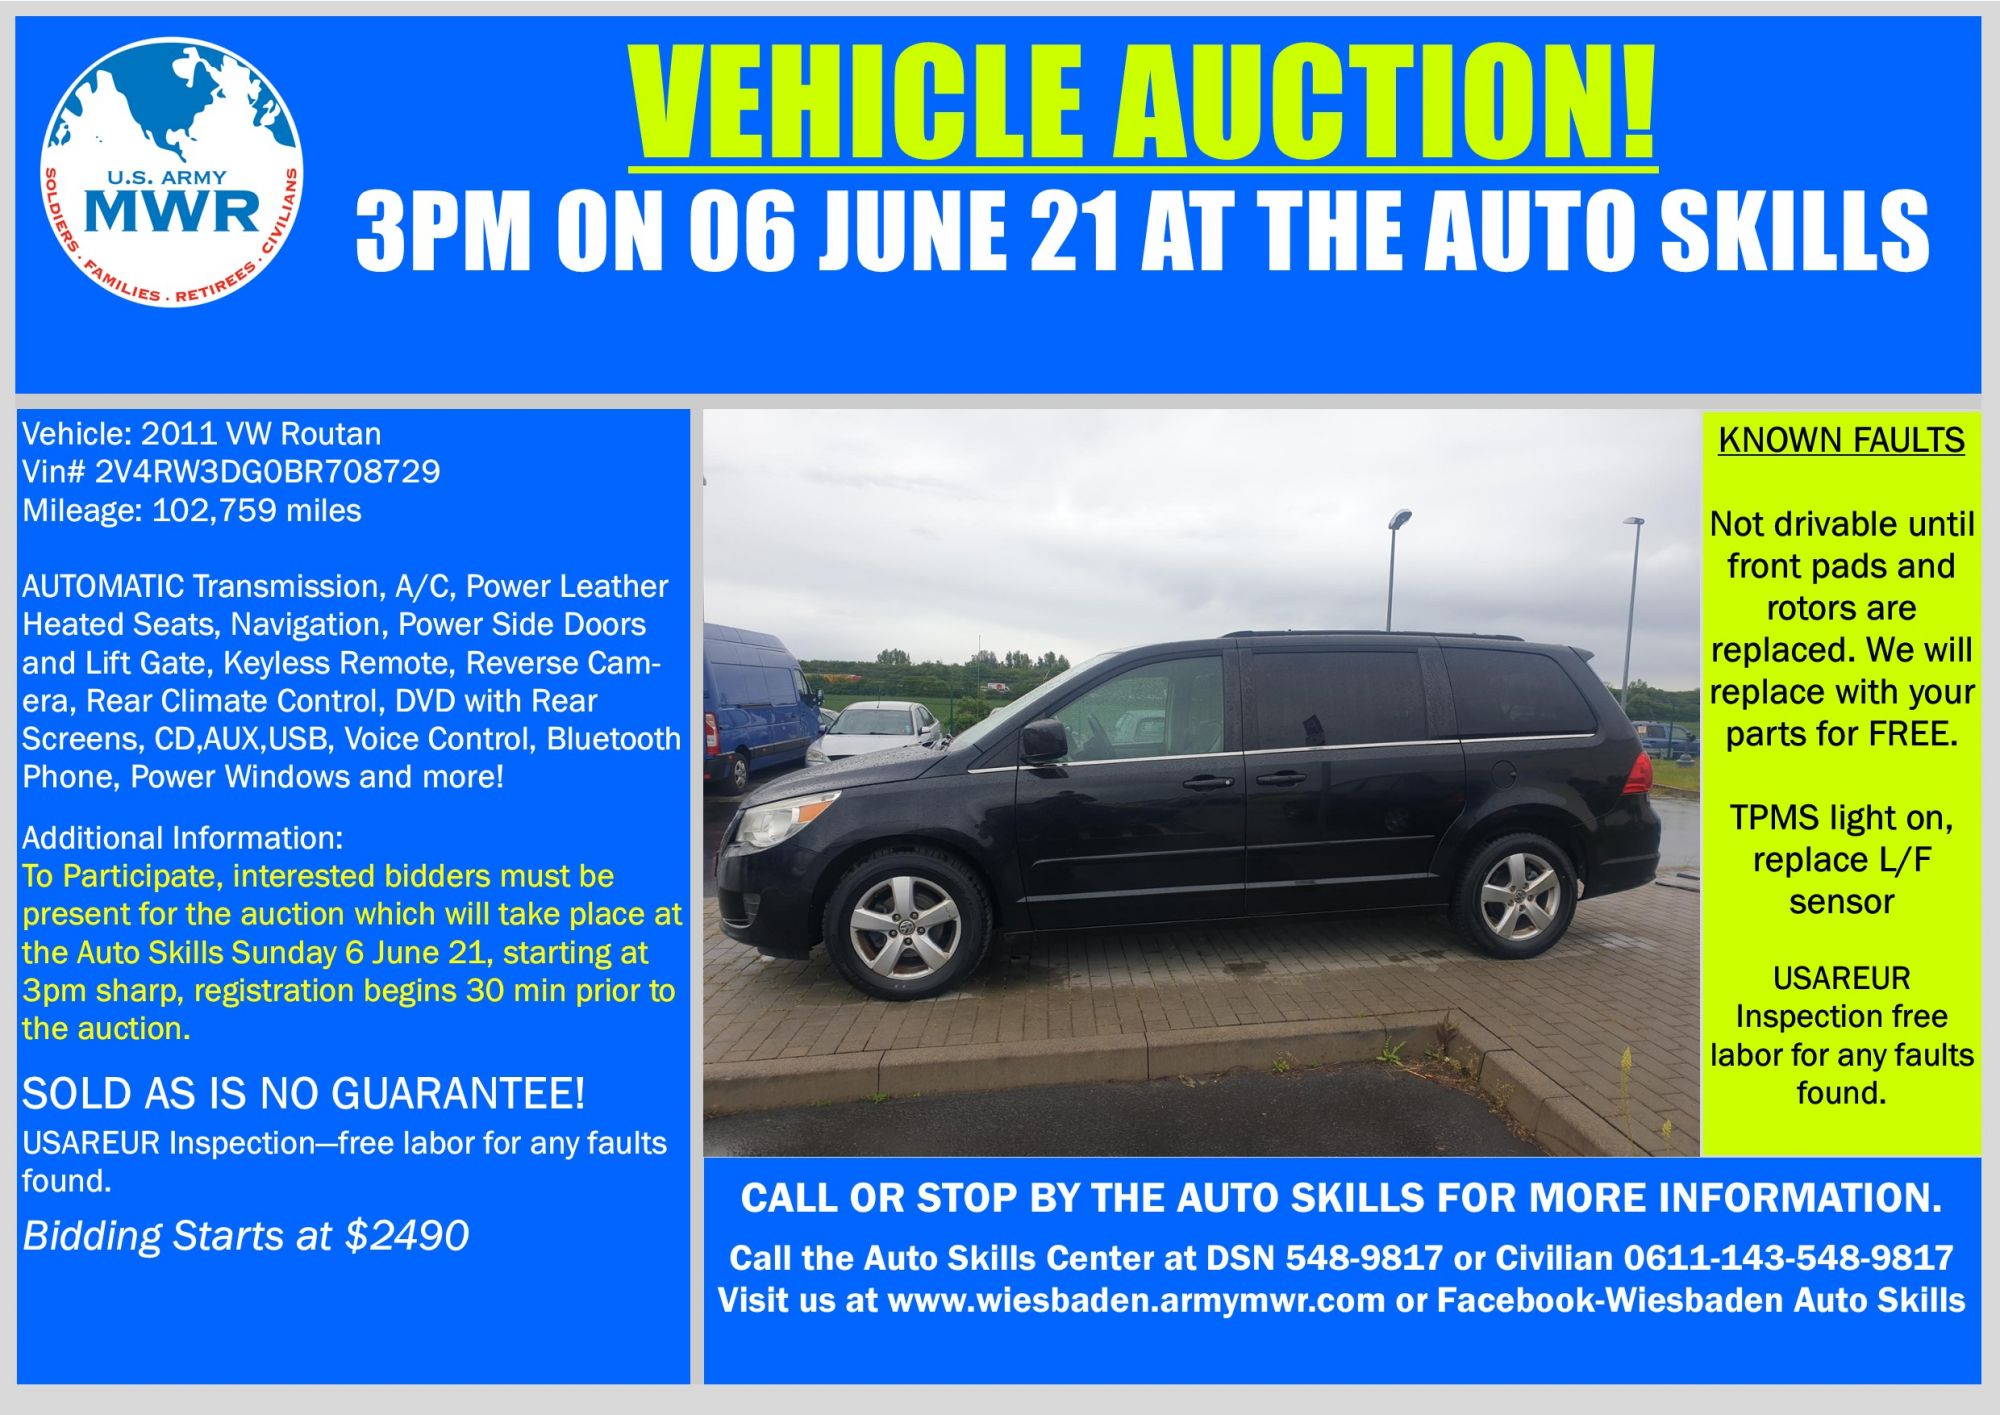 Sale VW Routan 6 June 21.jpg